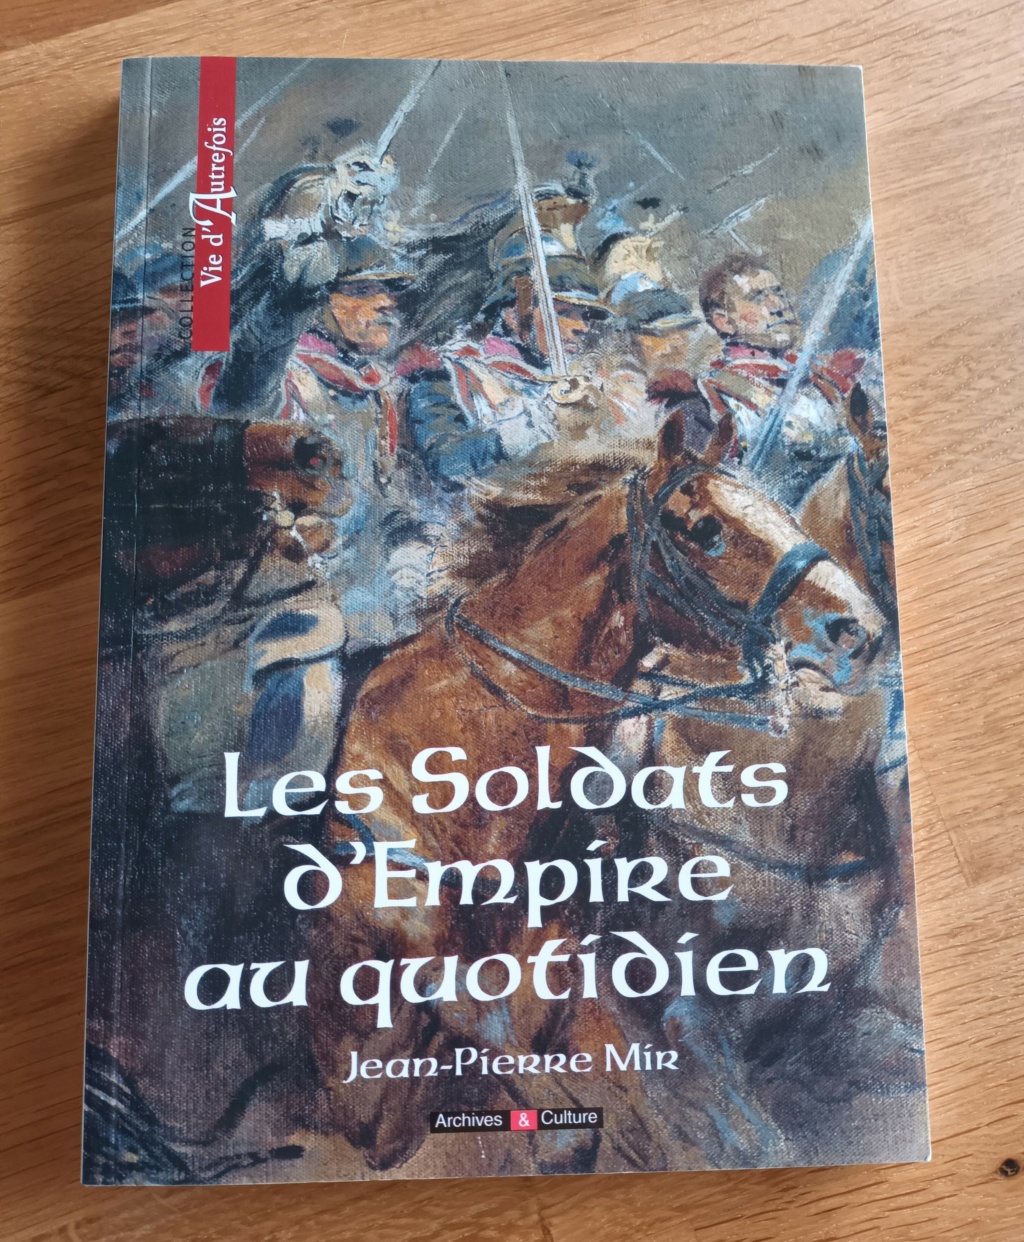 "Les mythes de la Grande Armée" - Thierry Lentz & Jean Lopez Bis11